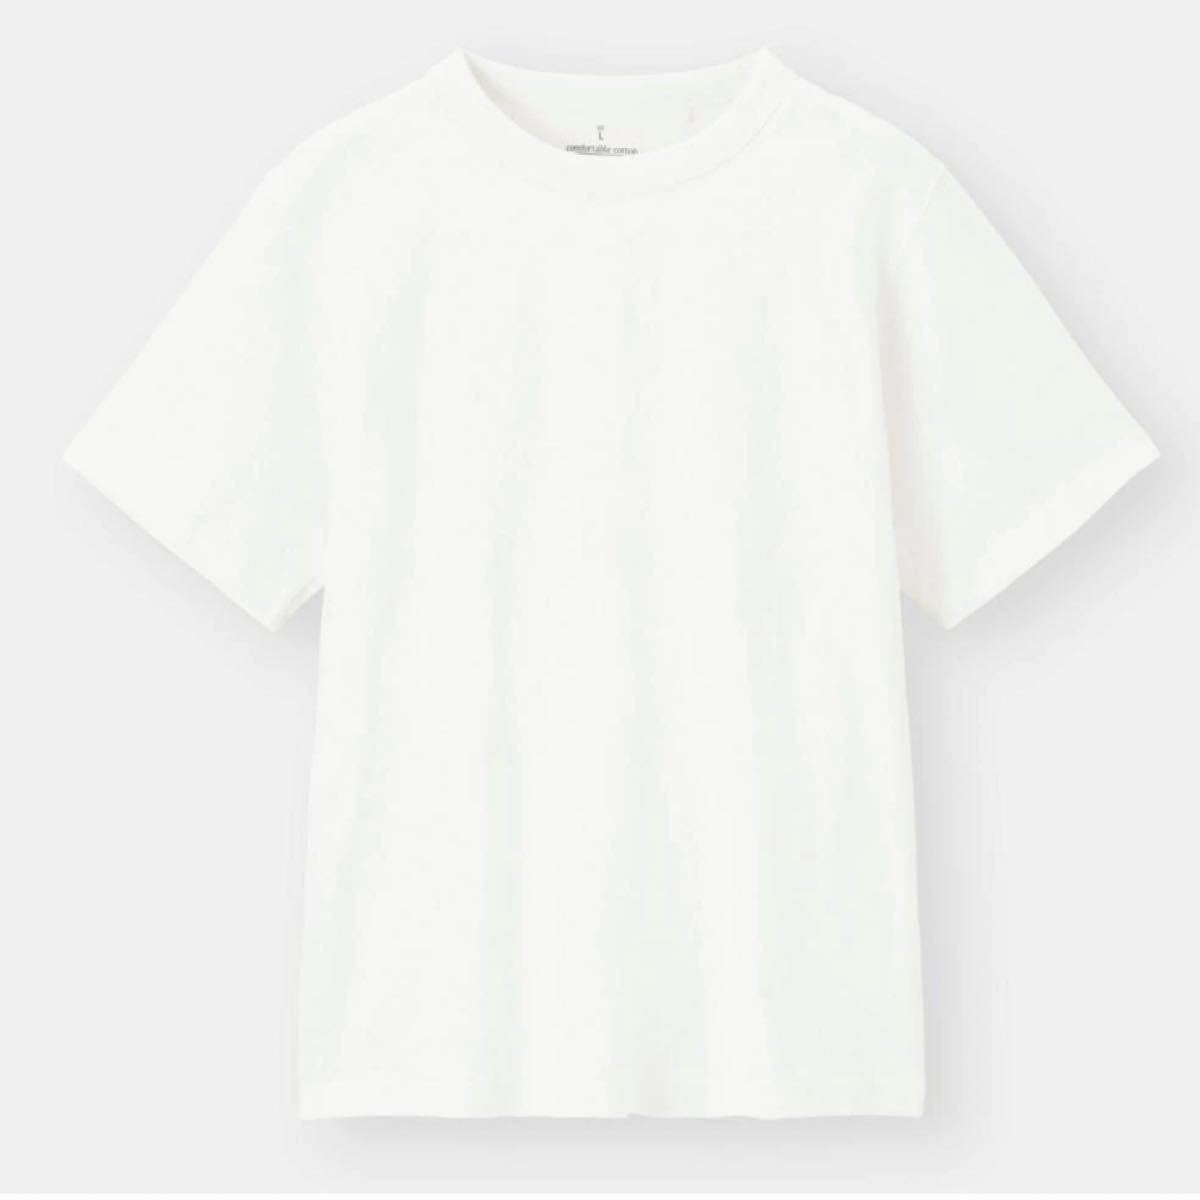 新品 未使用 ジーユー GU Tシャツ 白、ナチュラル 2枚セット 